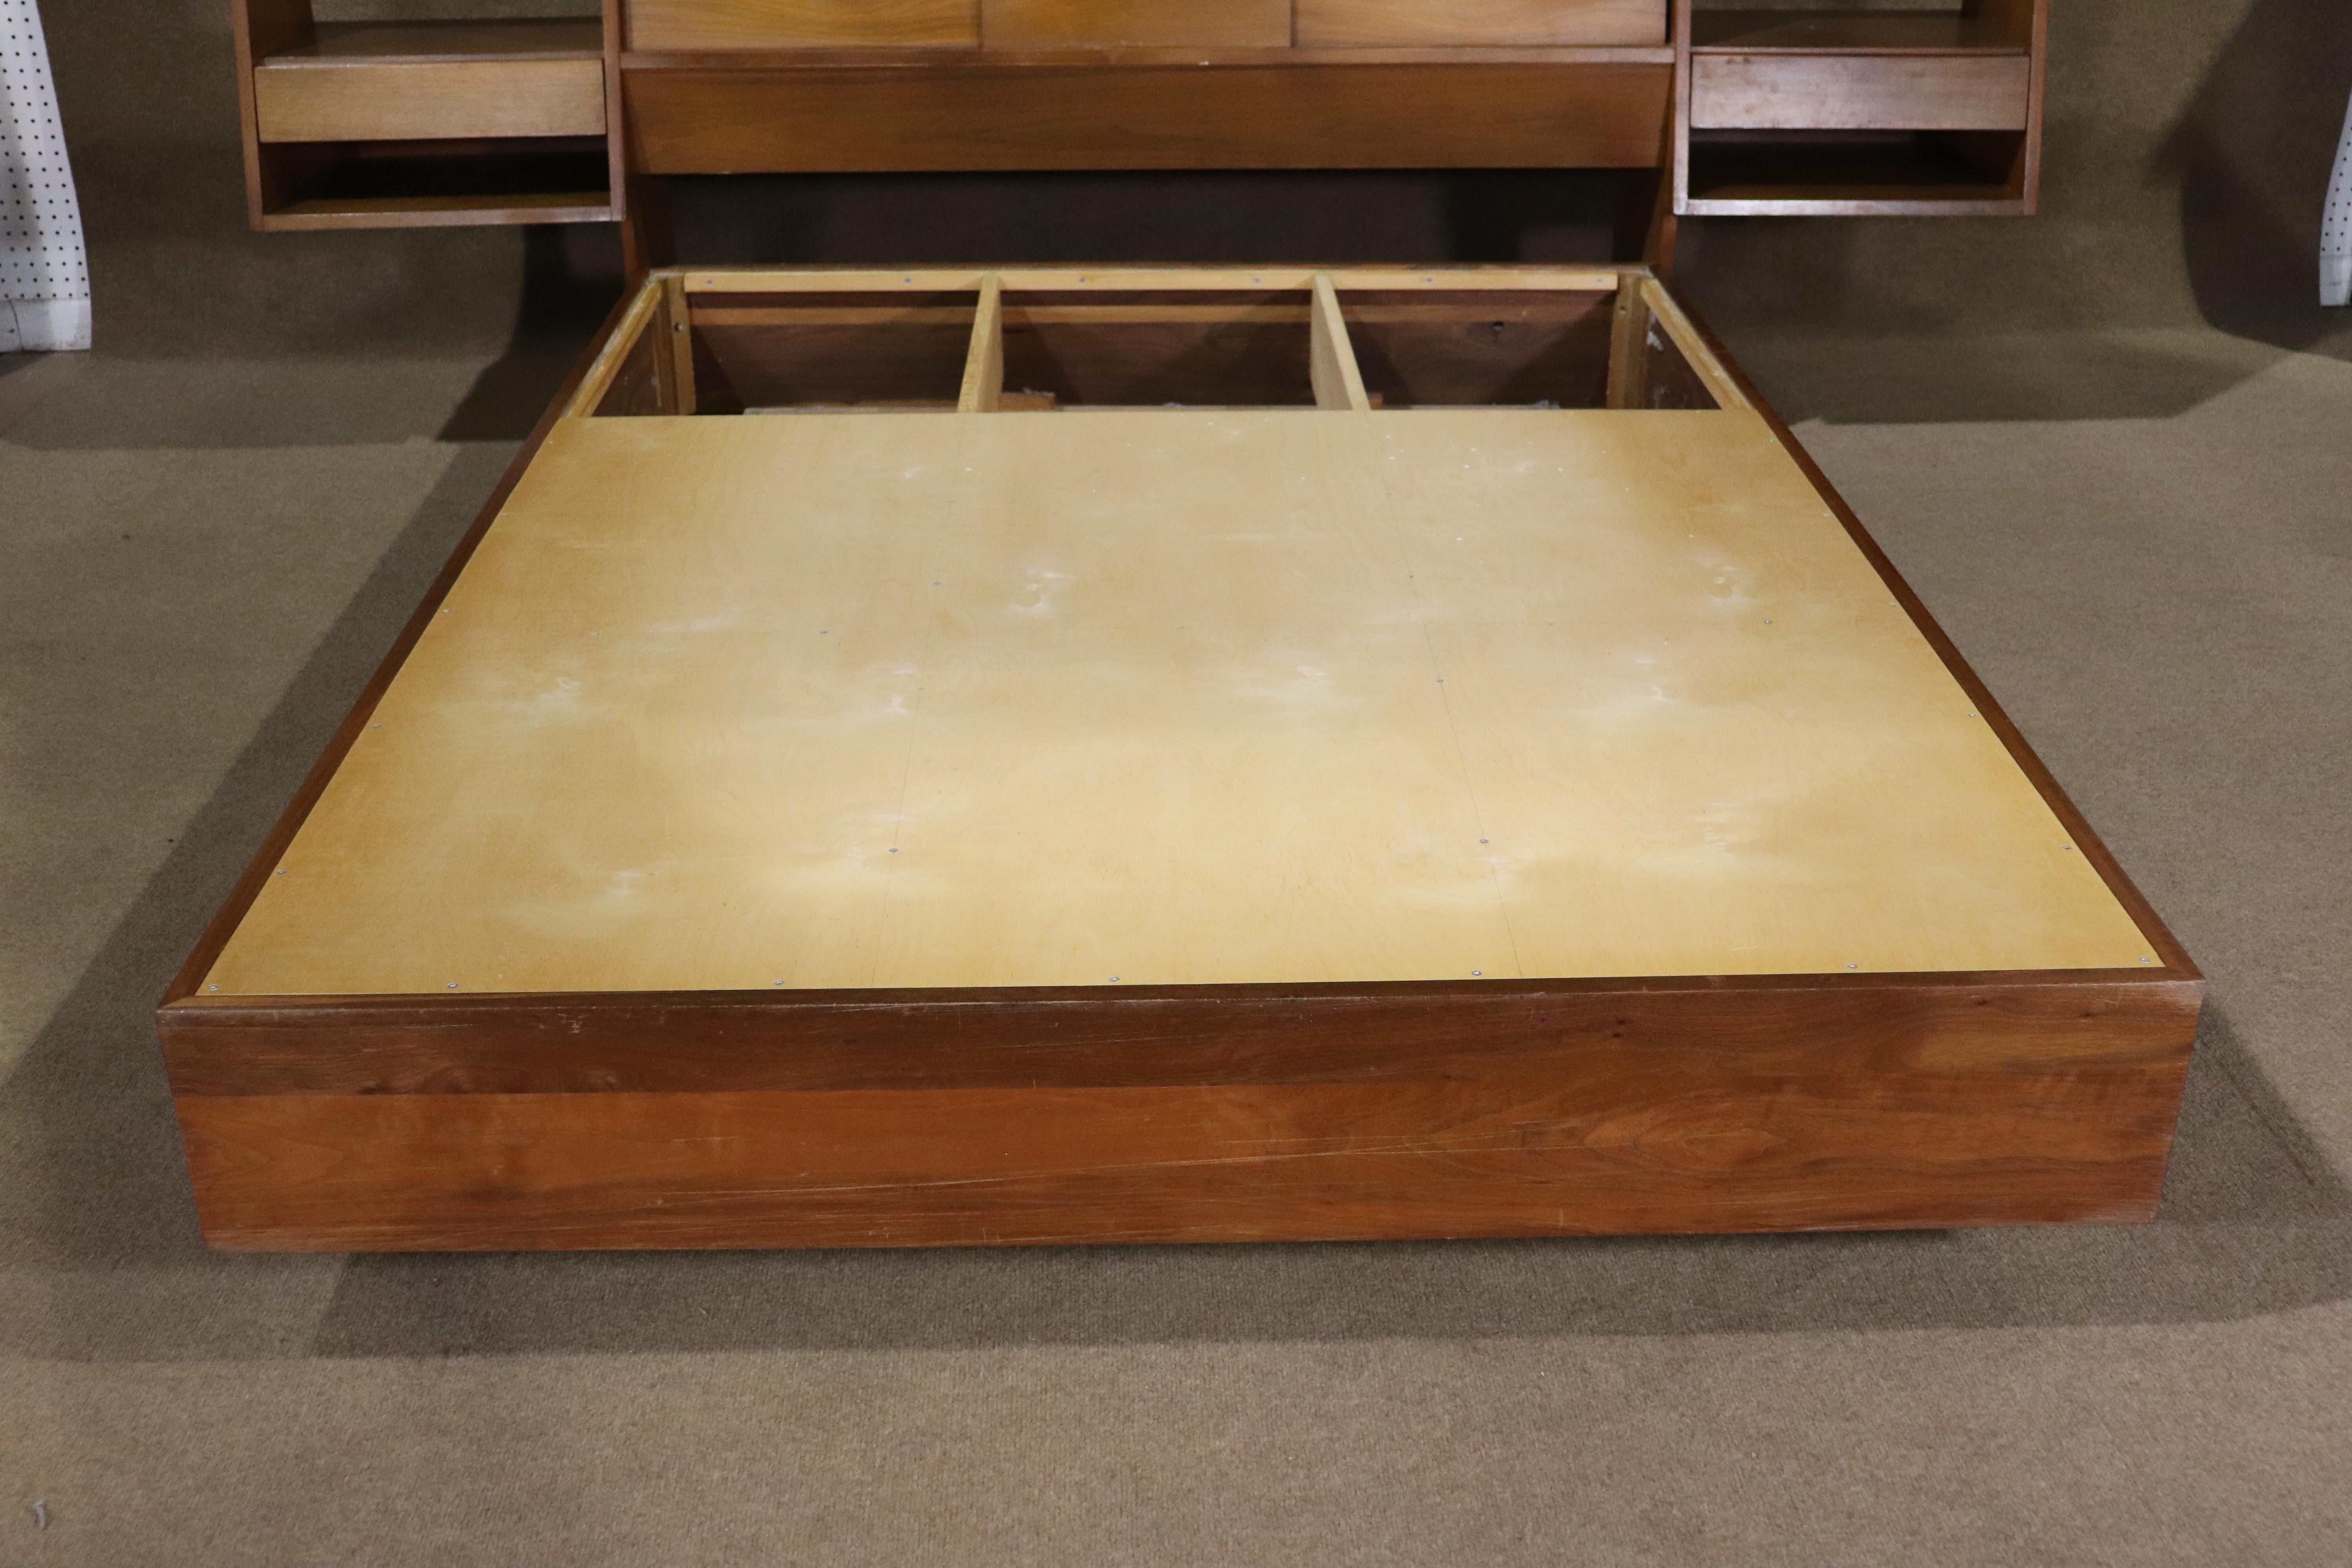 Large mid-century modern walnut platform bed with storage headboard. 
Mattress size: 54.5